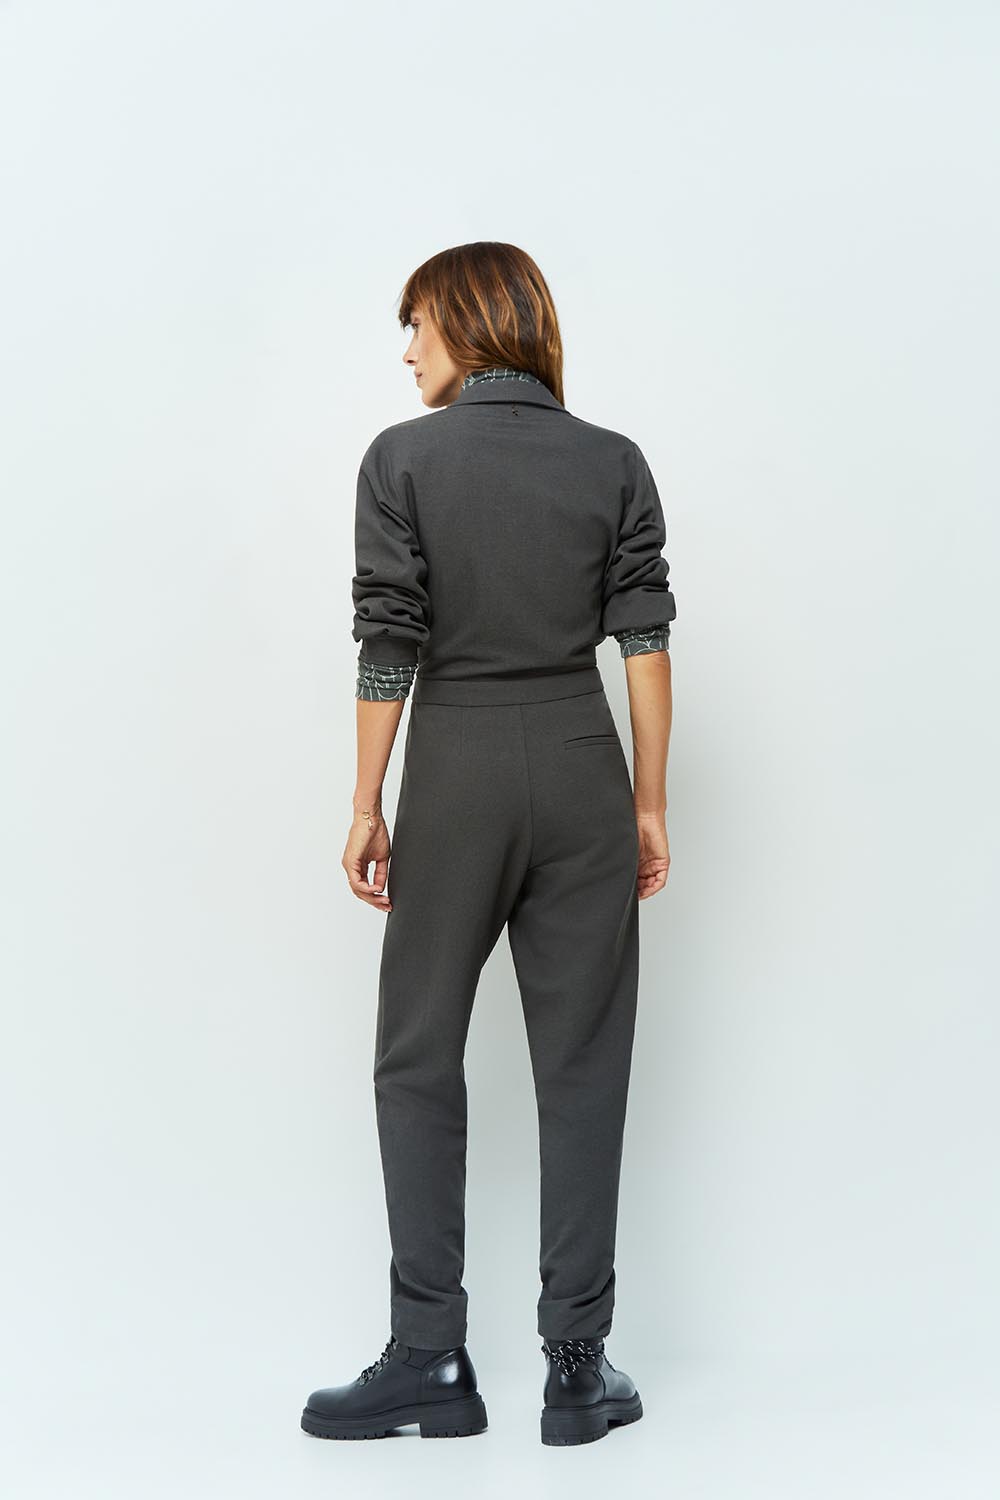 RYLEIGH - Combinaison pantalon droite anthracite en polyester recyclé